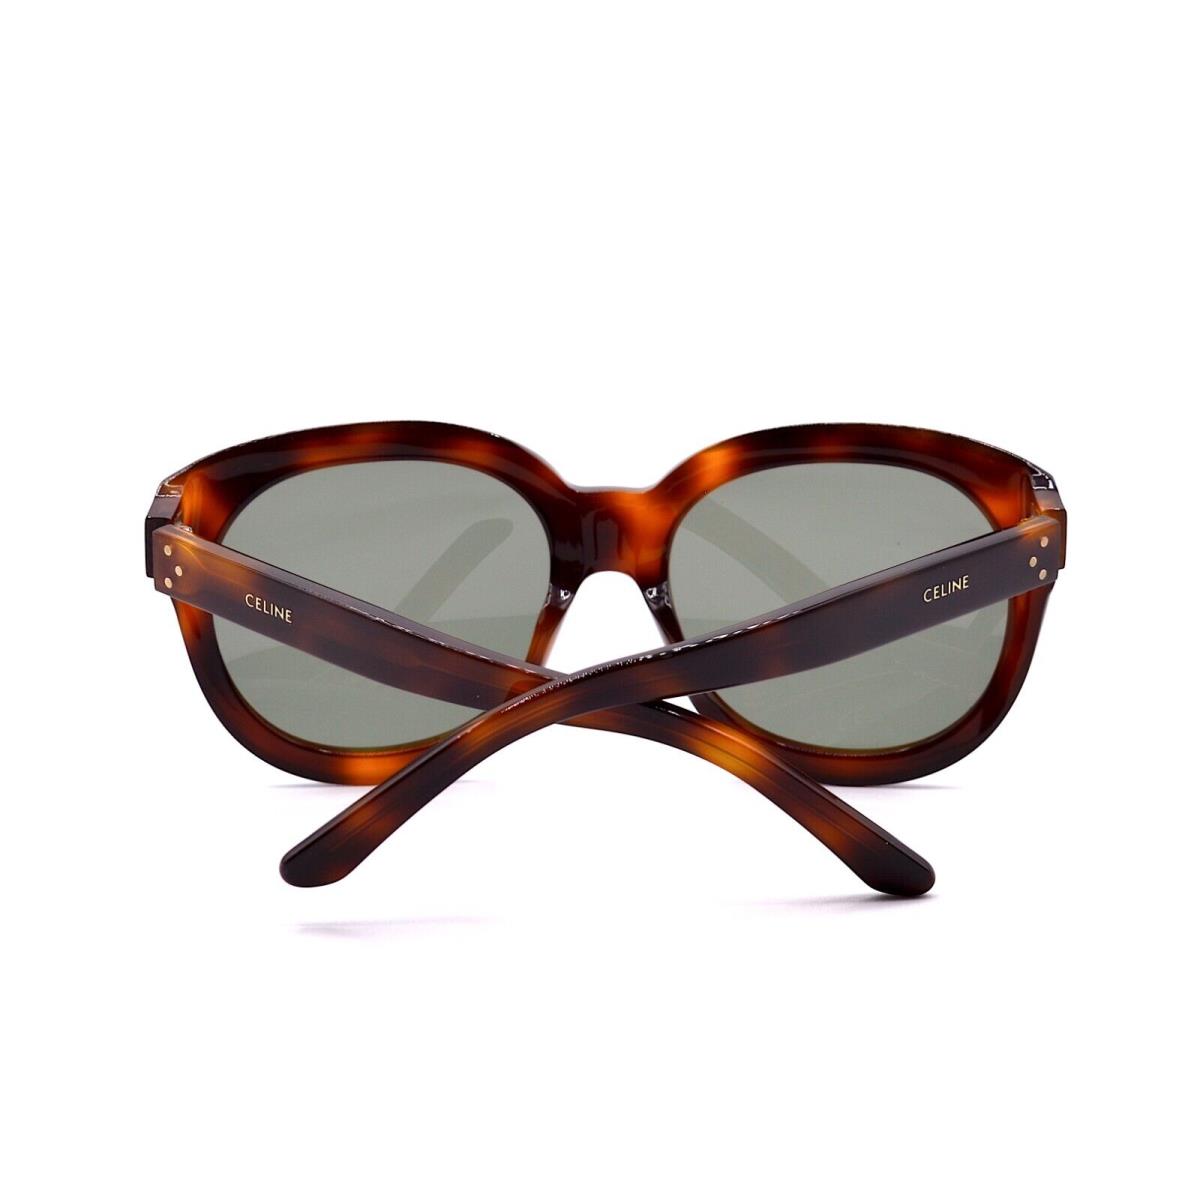 Celine sunglasses  - HAVANA Frame, Gray Lens